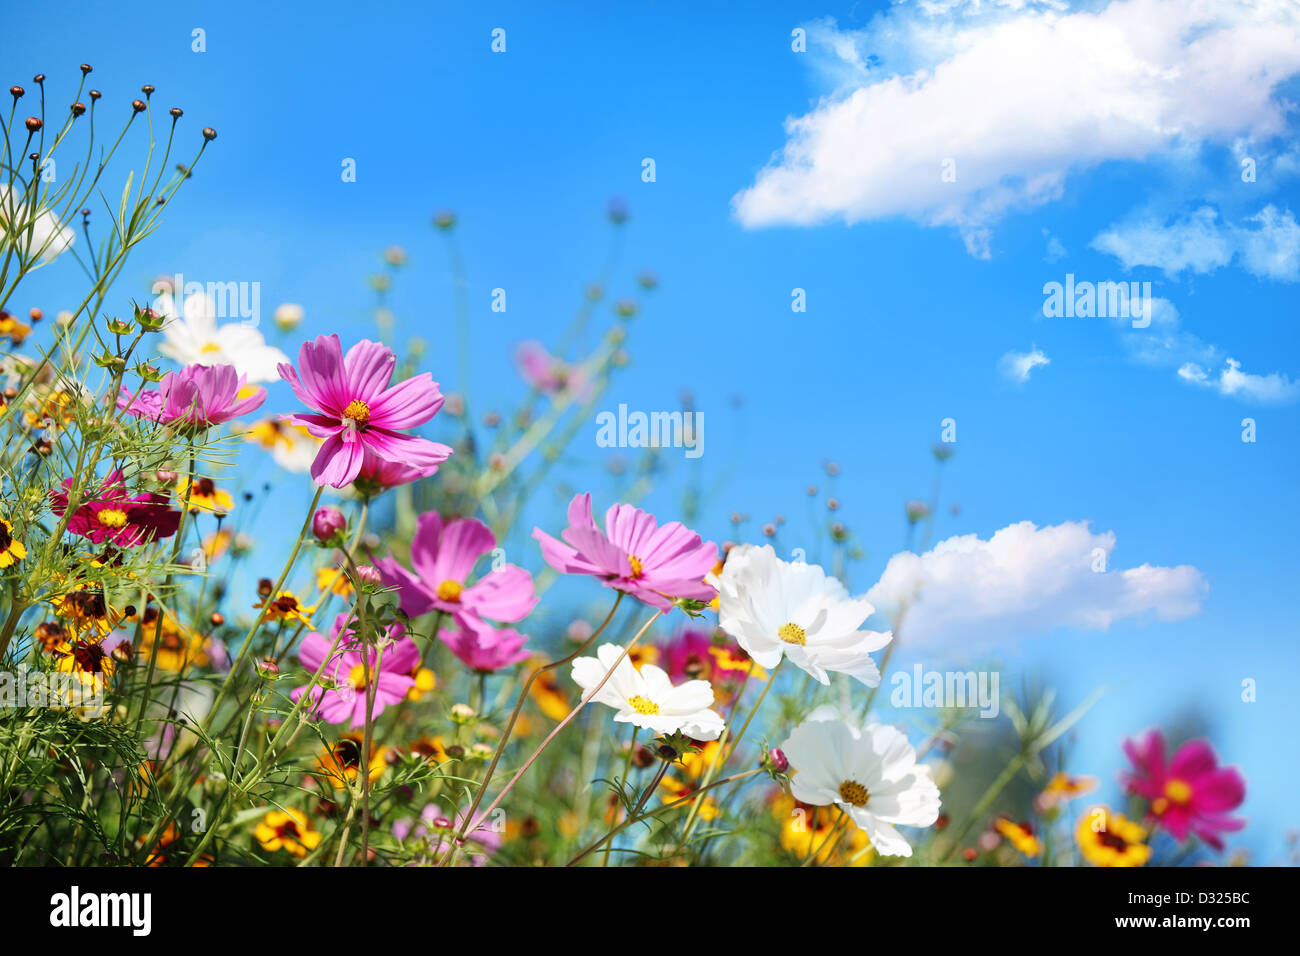 Daisy flower against blue sky Stock Photo